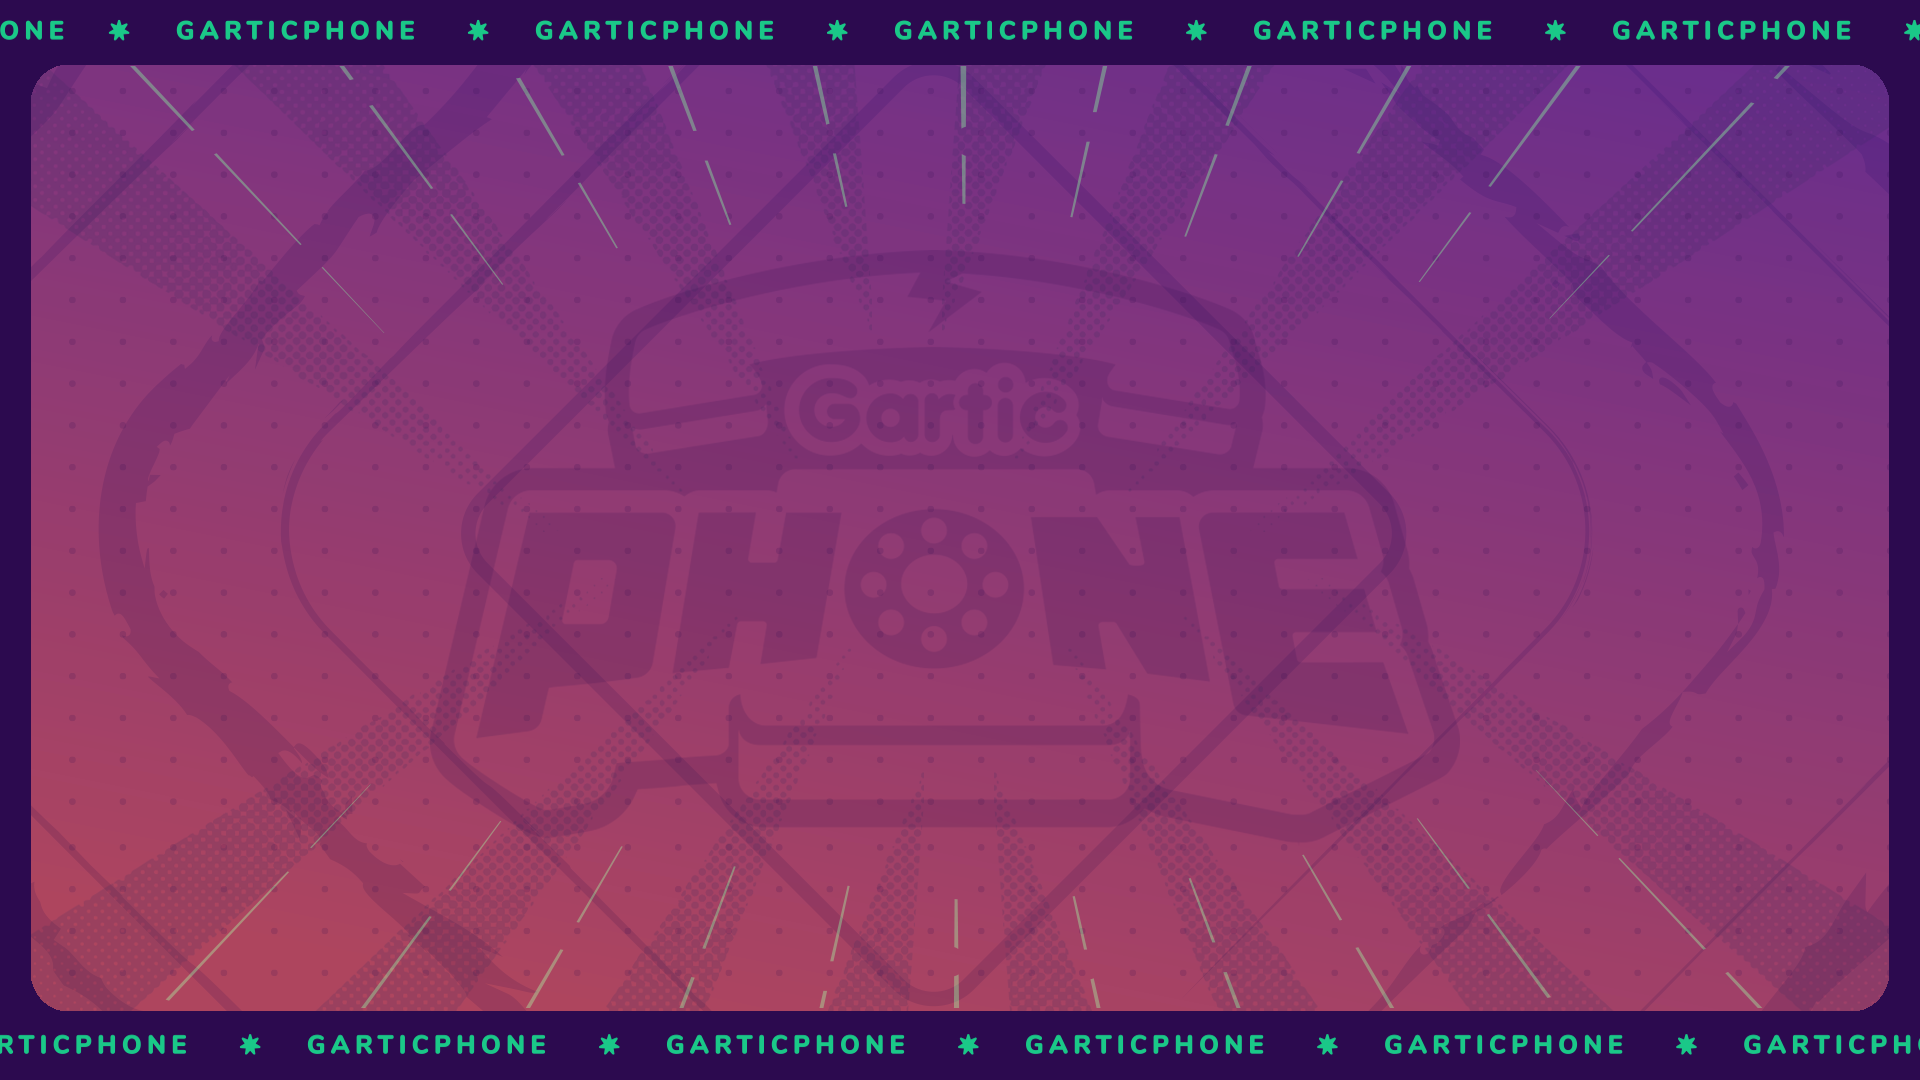 Video Game Gartic Phone HD Wallpaper